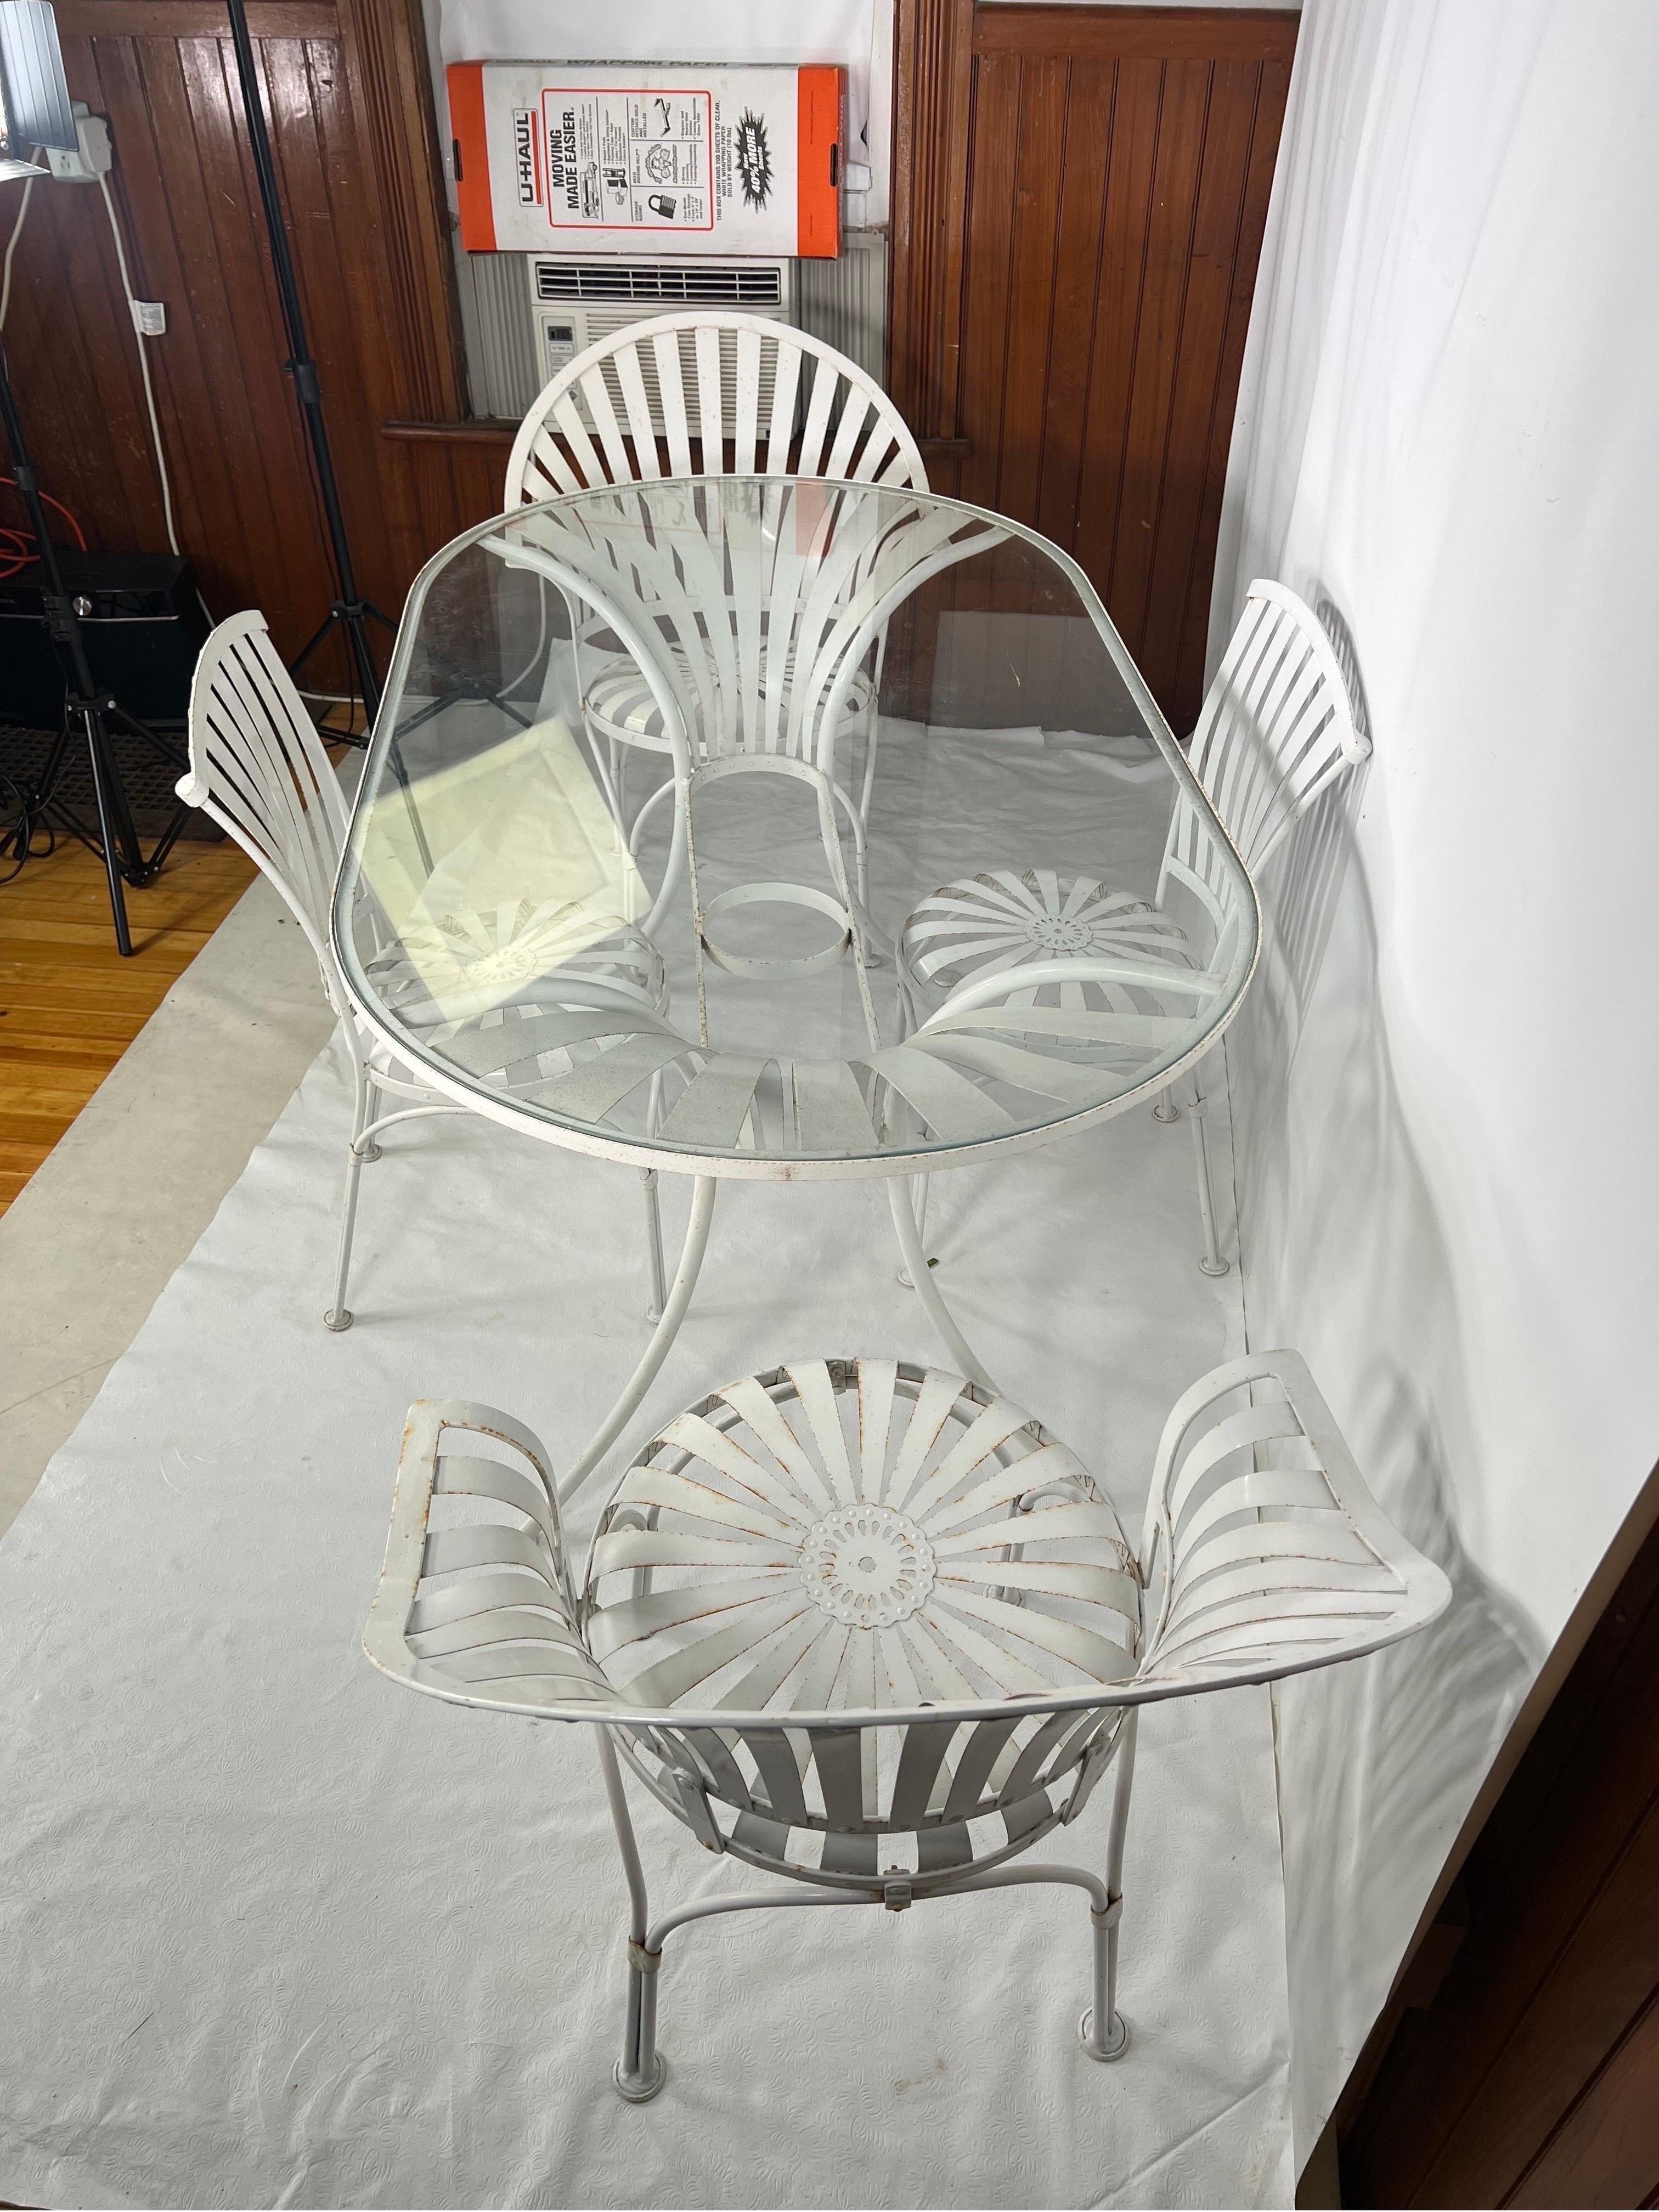 Table et chaises de patio Francois Carre - Ensemble de 5 pièces

Ensemble de jardin en fer français par François Carre, avec une table en verre, deux chaises à ressort et deux chaises à ressort sans bras.

La table mesure 60.5 W 33 3/4th D 29 3/4th